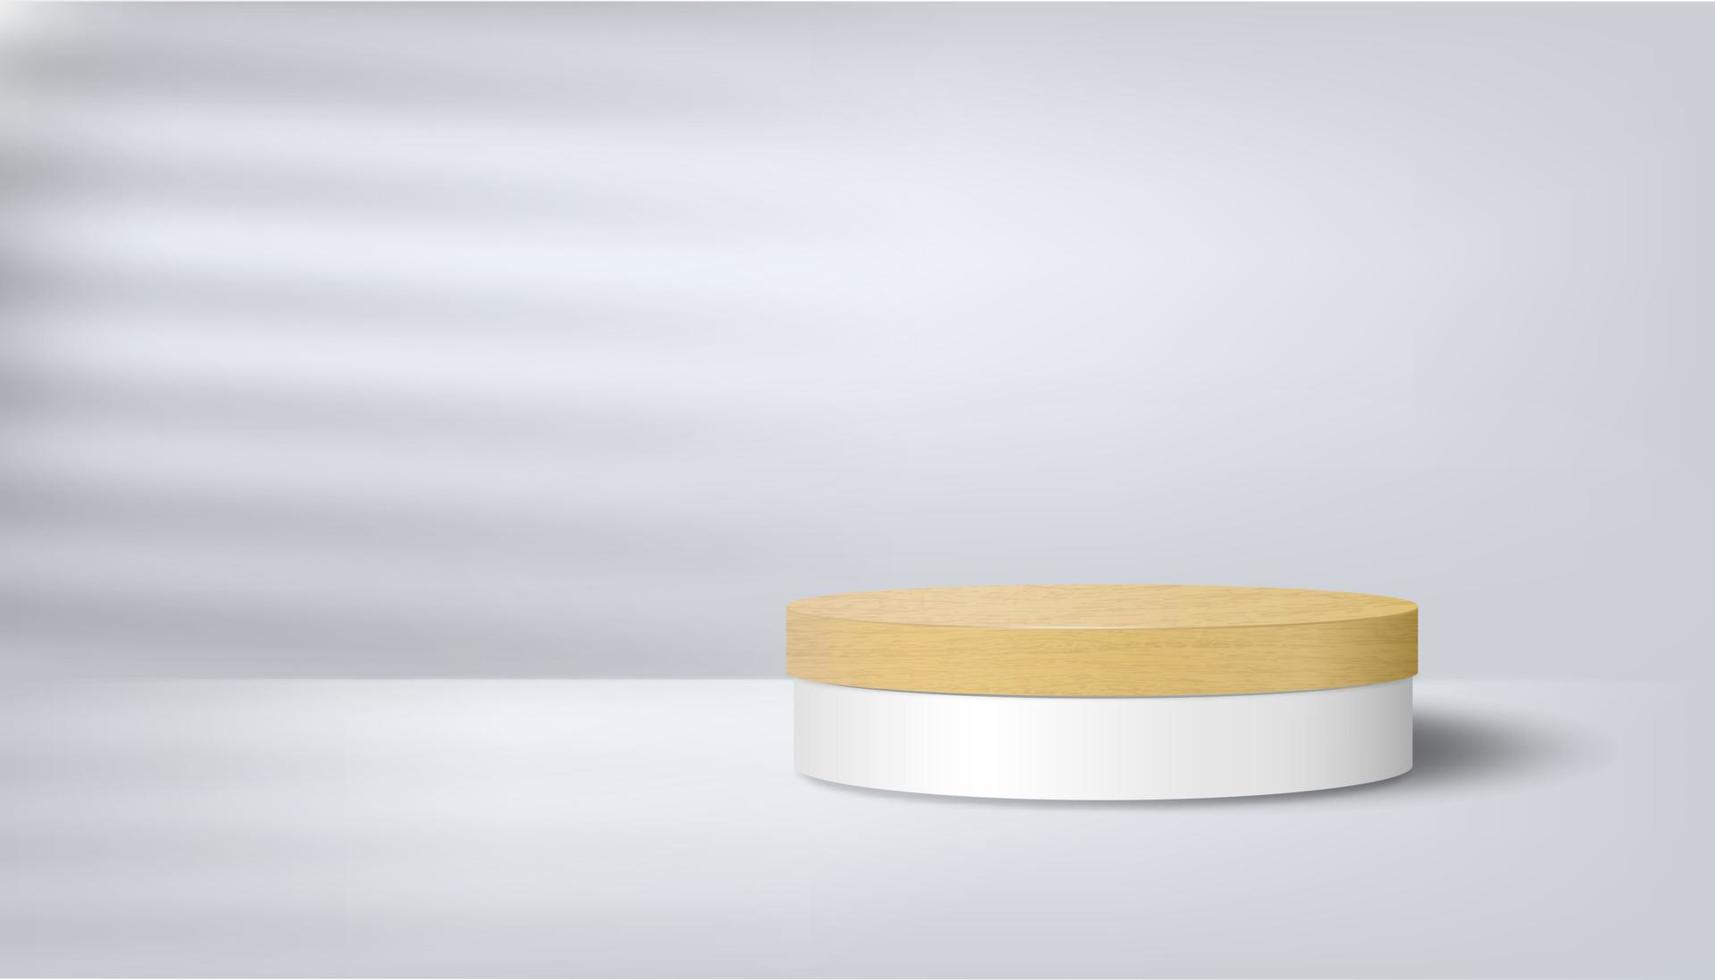 estágio minimalista abstrato com um pódio de madeira em um fundo branco com sombras. apresentação do produto, layout, demonstração de produtos cosméticos, pedestal ou plataforma de palco. vetor 3D